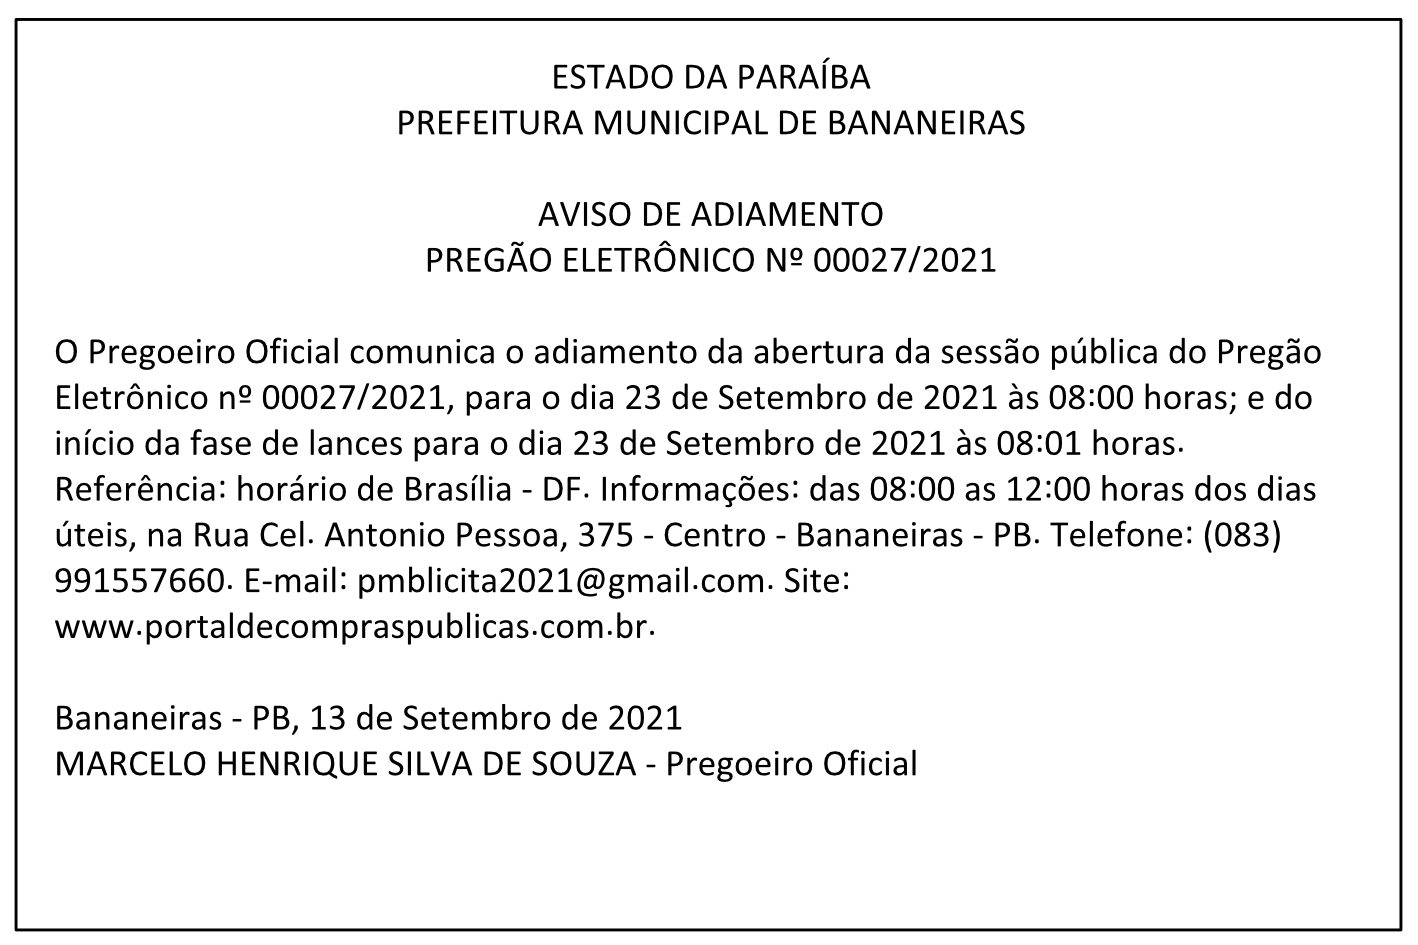 PREFEITURA MUNICIPAL DE BANANEIRAS – AVISO DE ADIAMENTO – PREGÃO ELETRÔNICO Nº 00027/2021